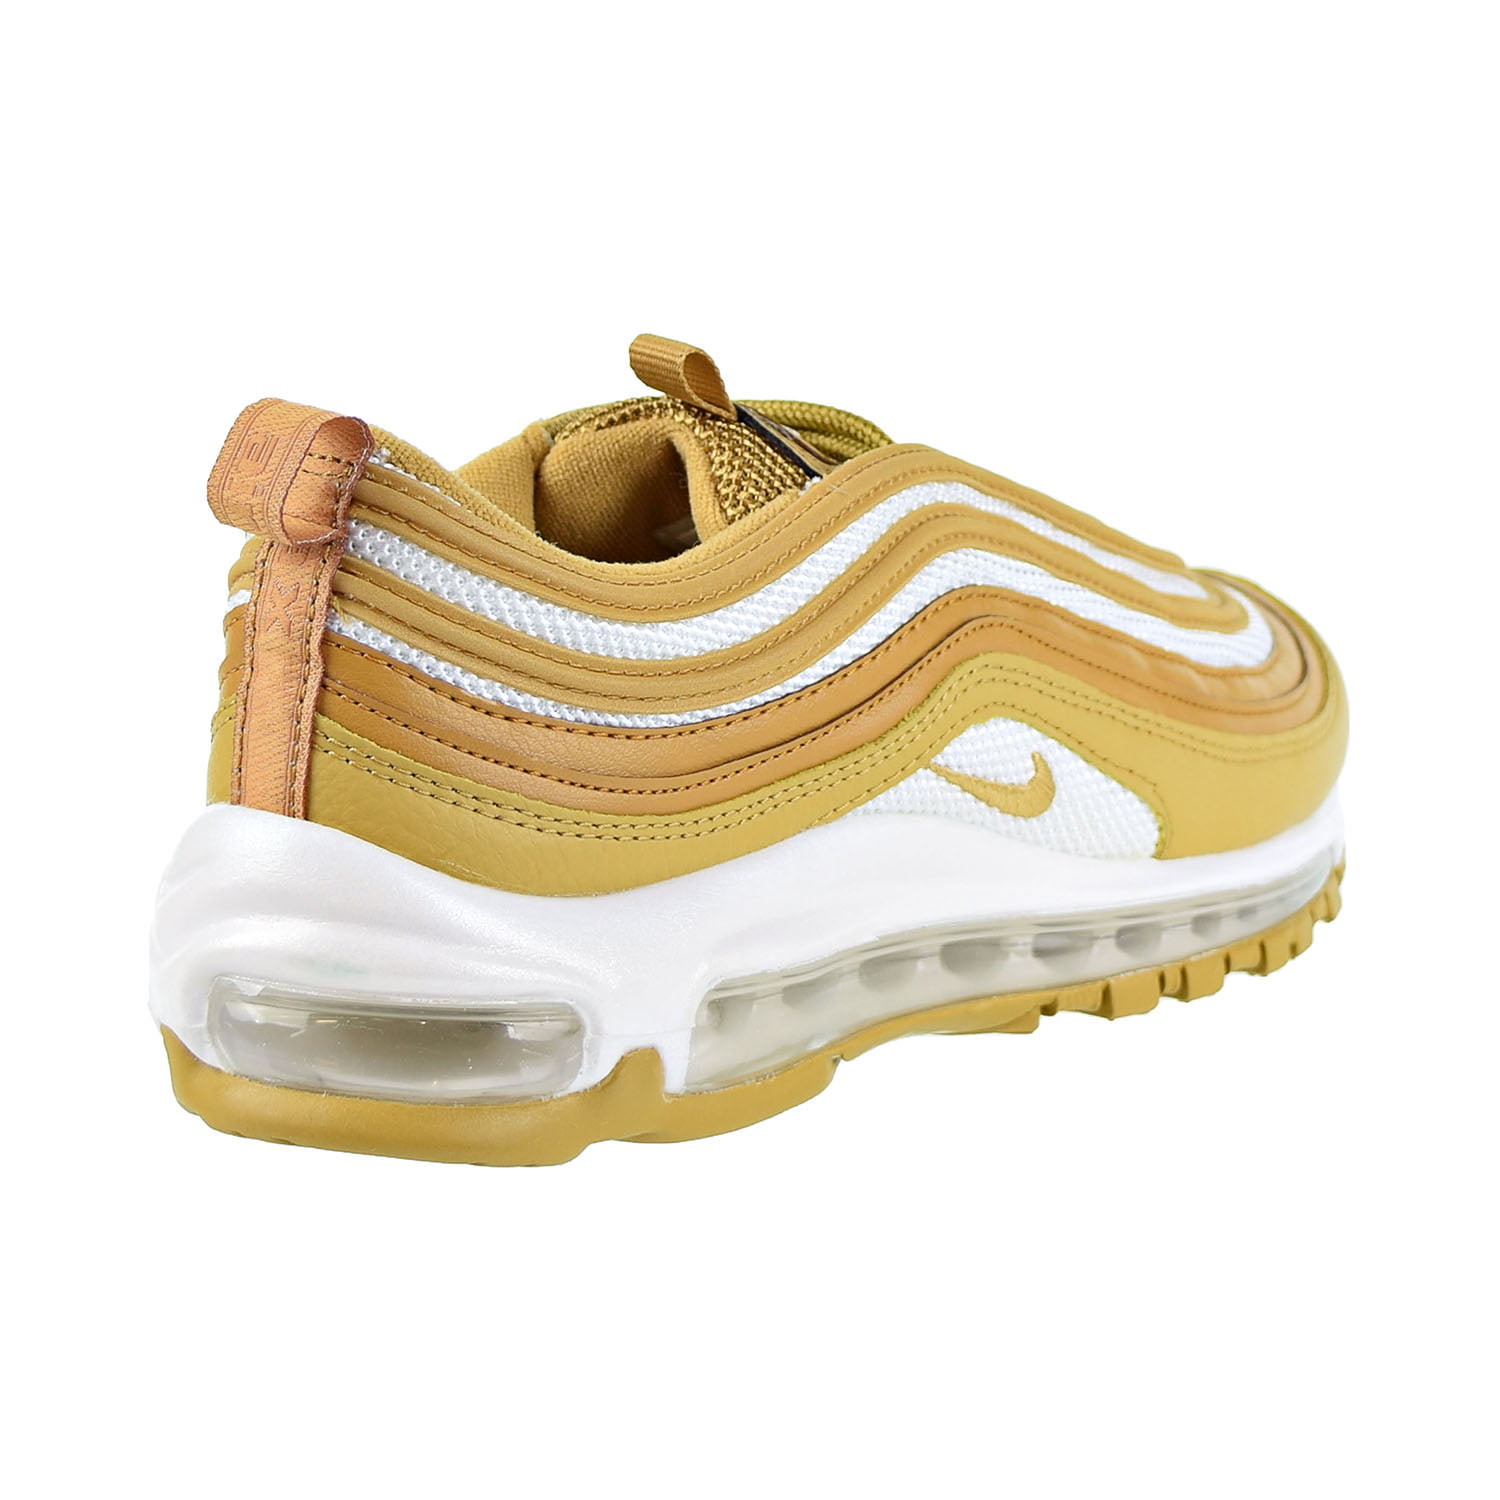 Nike Air Max 97 Women's Shoes Wheat/Club Gold 921733-702